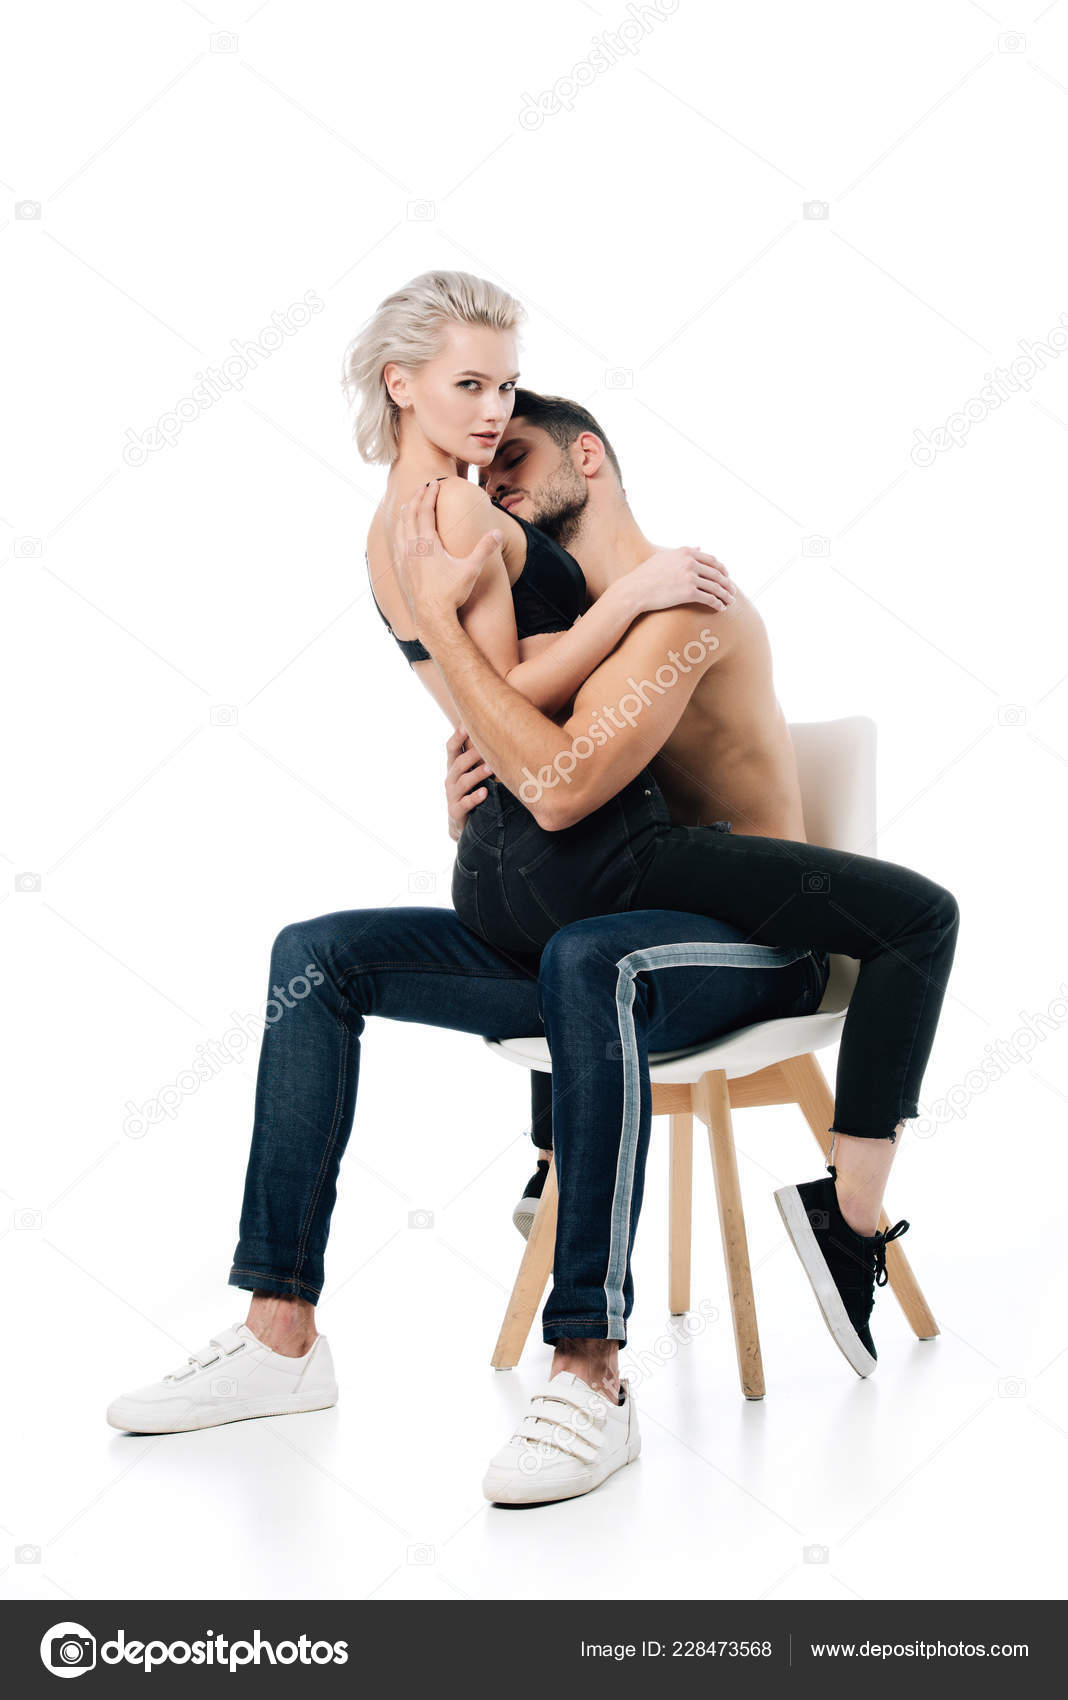 Секс сидя на стуле 79 фото